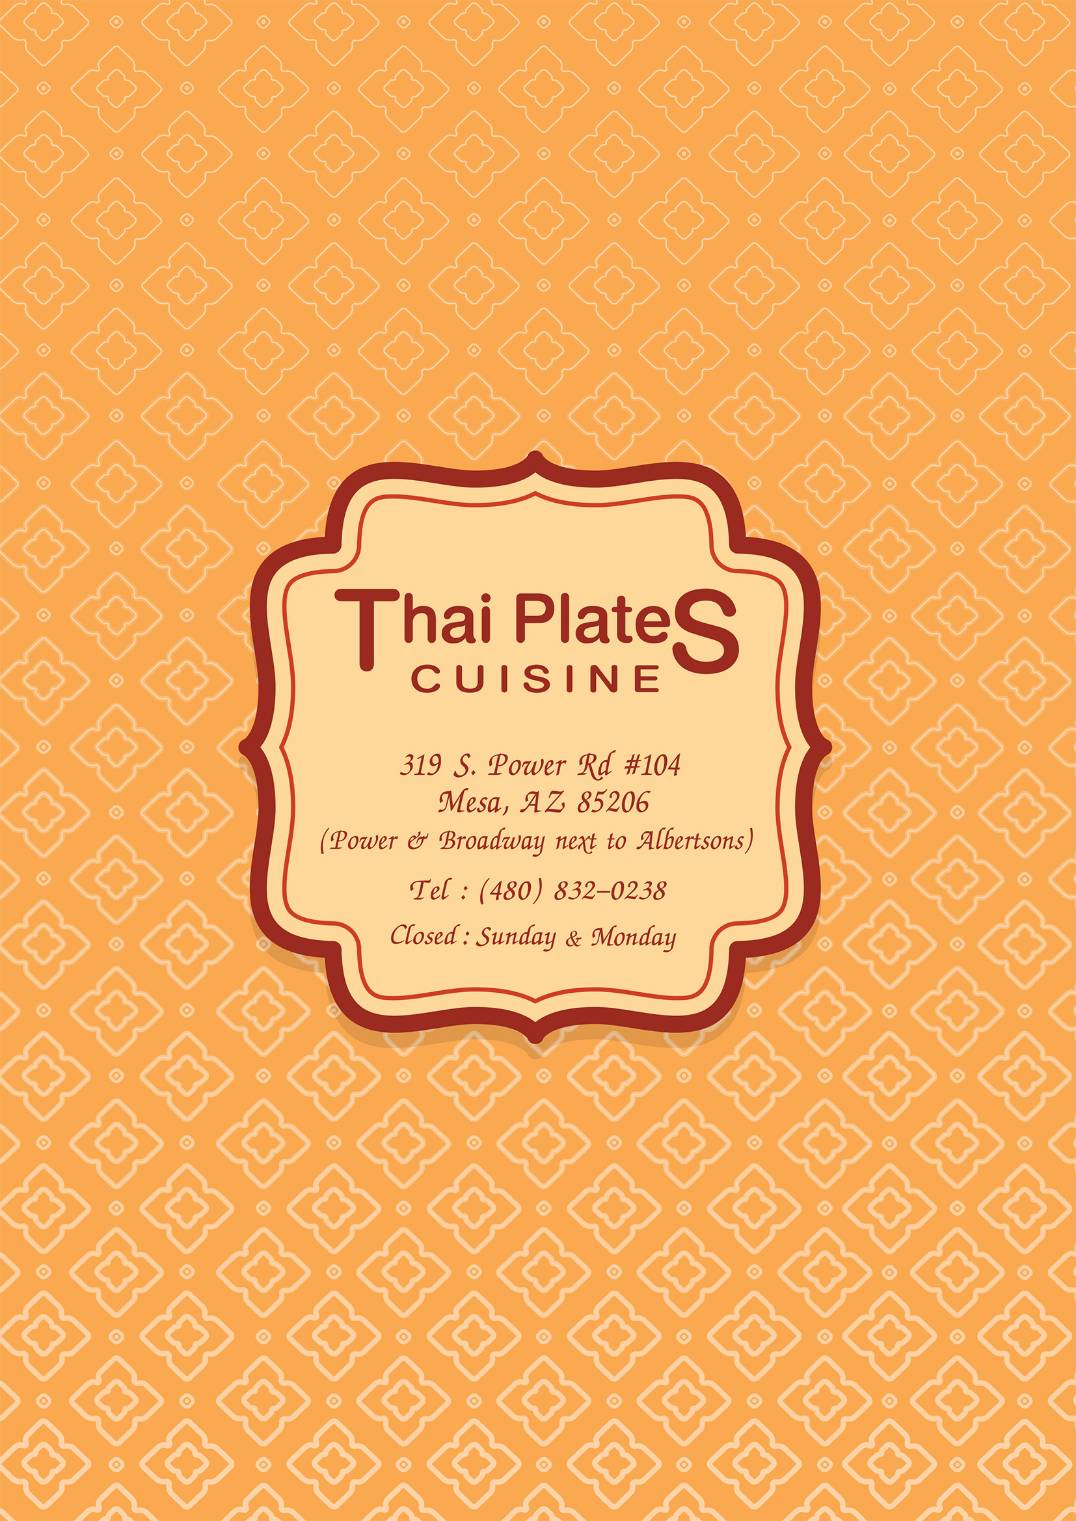 Thai Plates Cuisine 319 S Power Rd, Mesa, AZ 85206